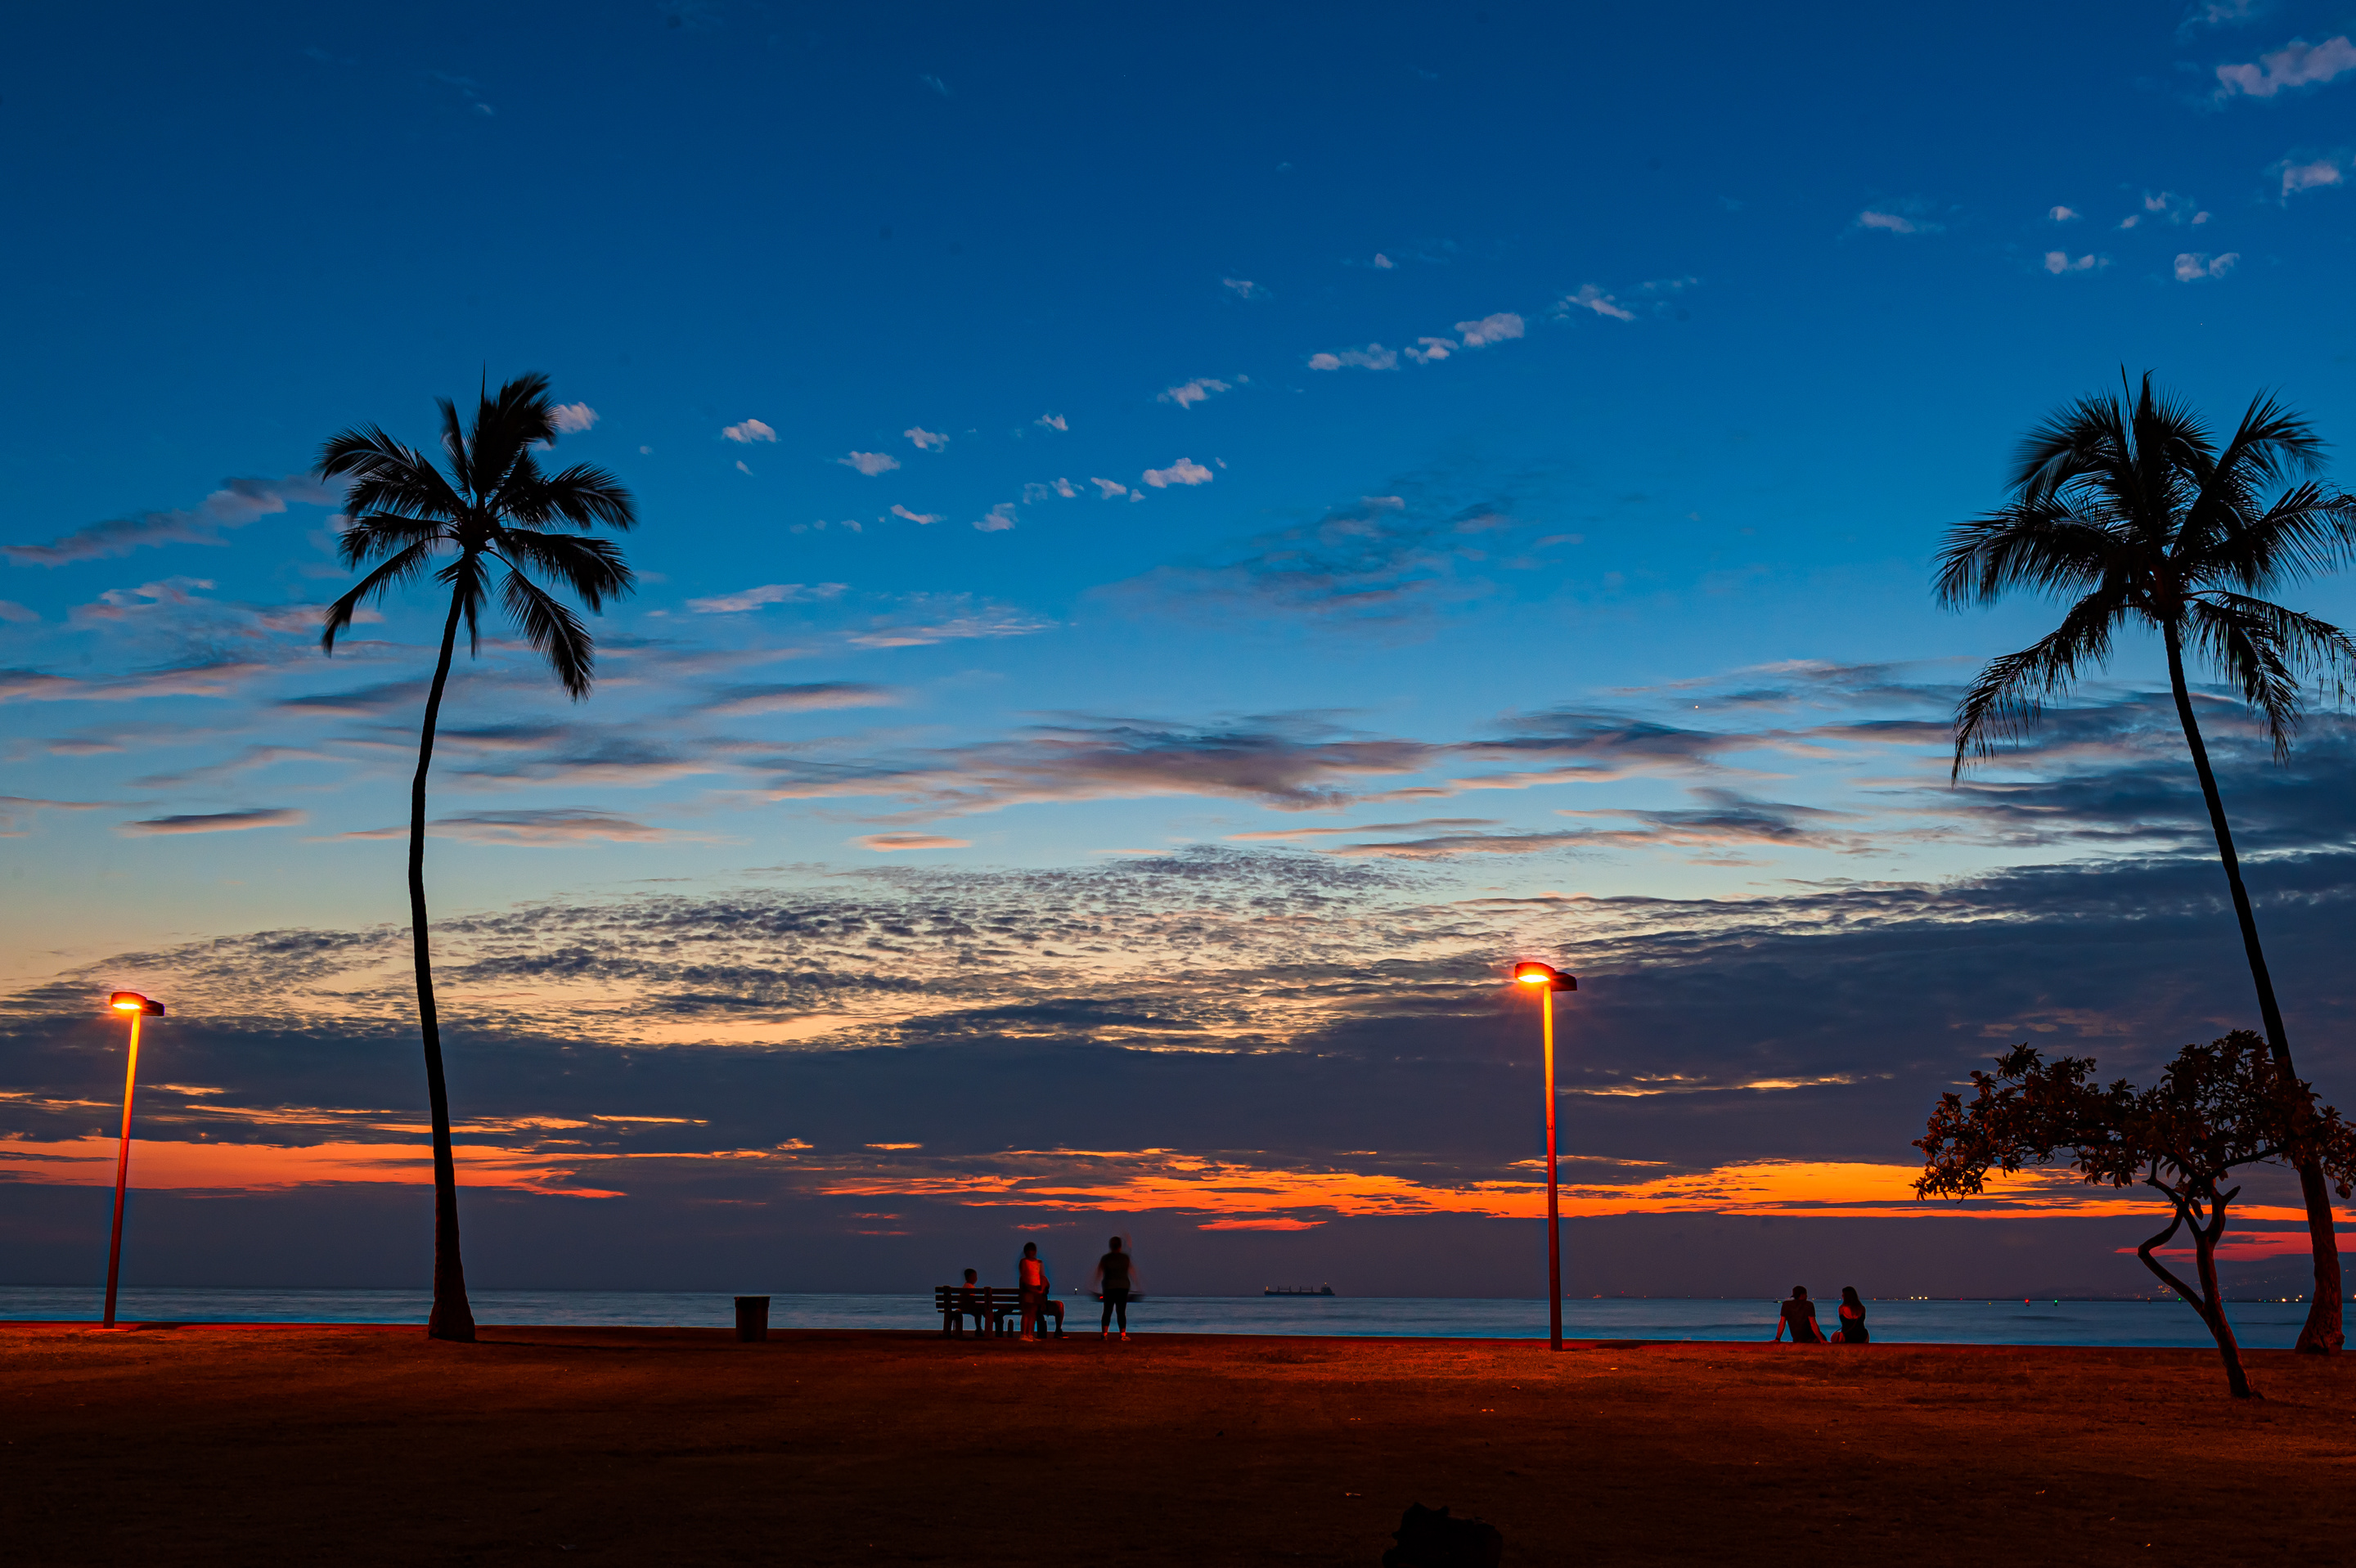 日出 夏威夷 瓦胡岛 - Pixabay上的免费照片 - Pixabay